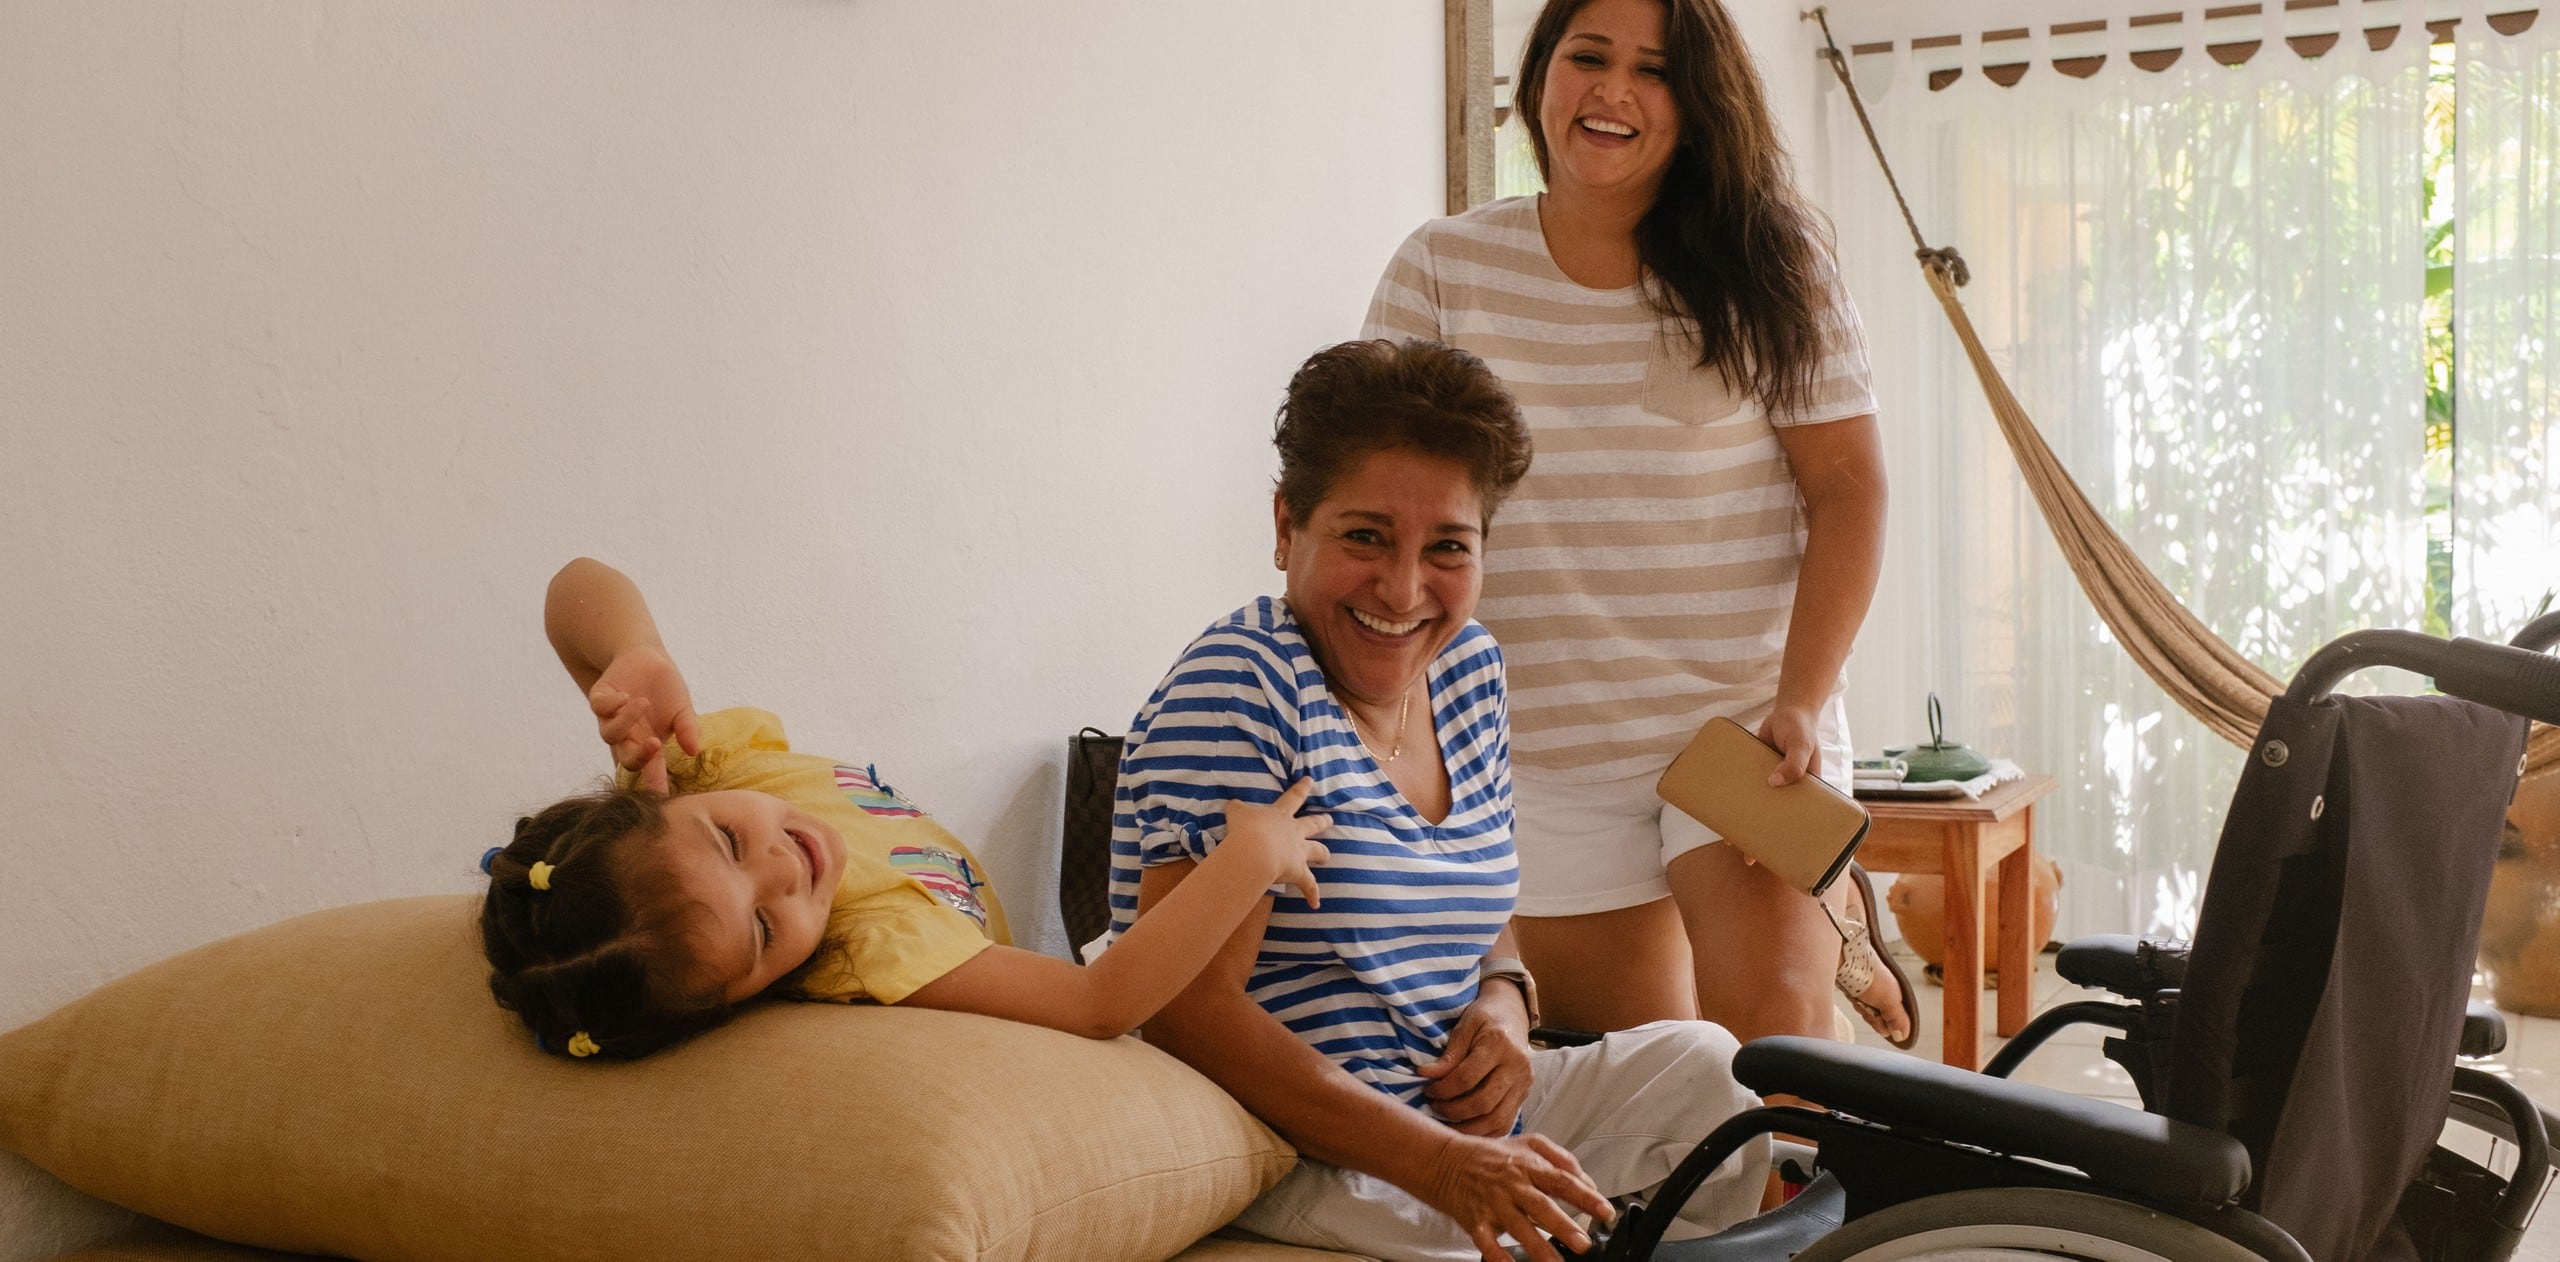 Drie generaties van een familie lachen en hebben plezier in een toegankelijke Airbnb-woning. Voor het oudste familielid staat een rolstoel.